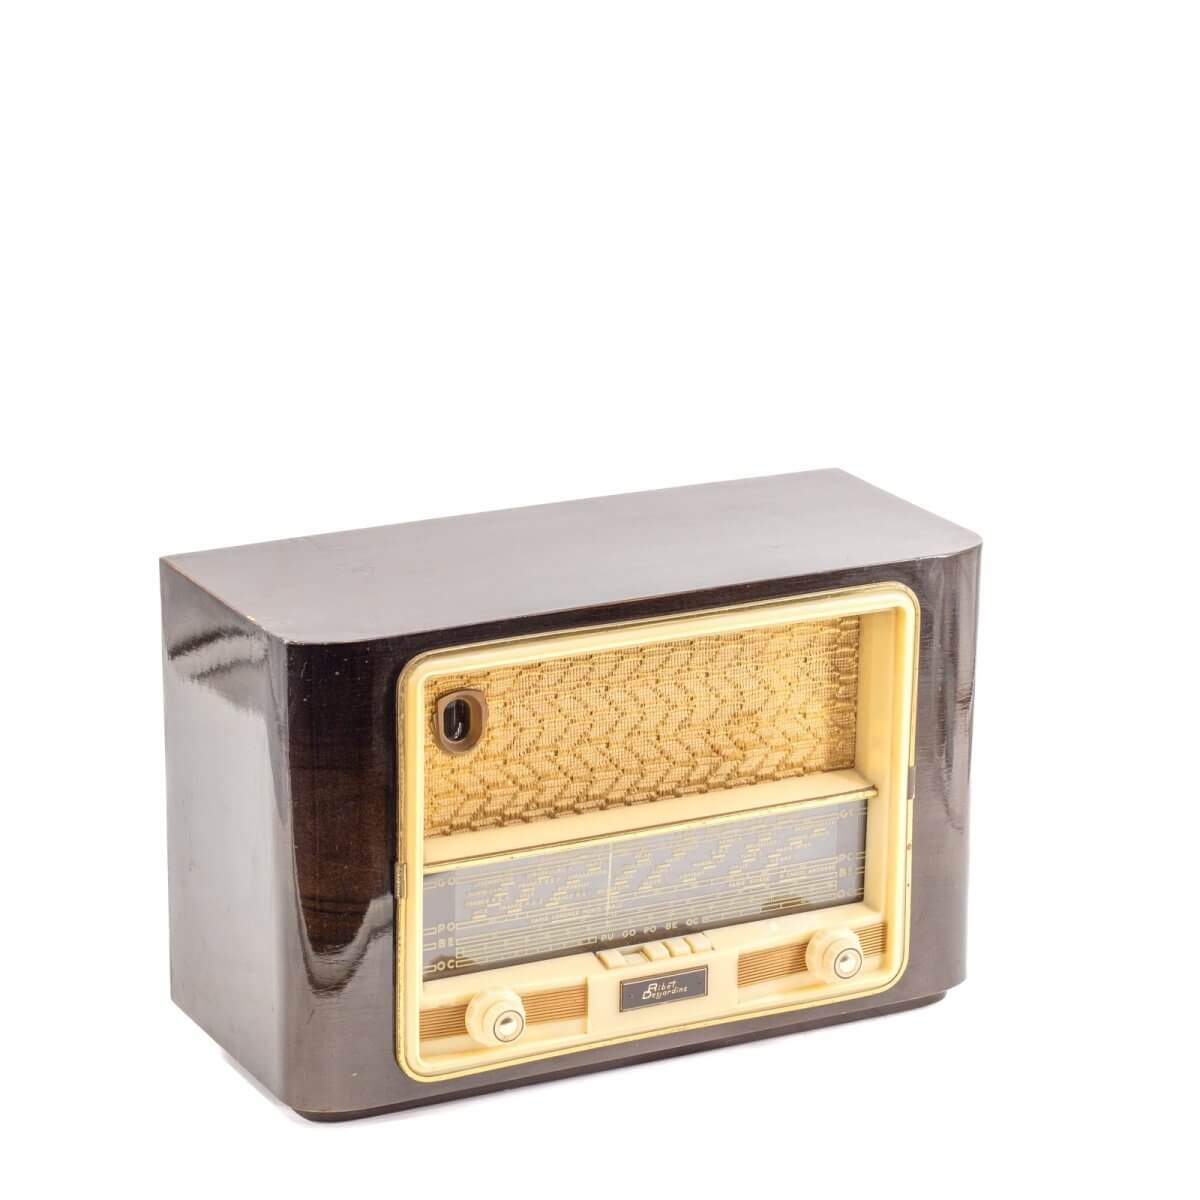 Radio Bluetooth Desjardins Vintage 50’S enceinte connectée française haut de gamme prodige radio vintage